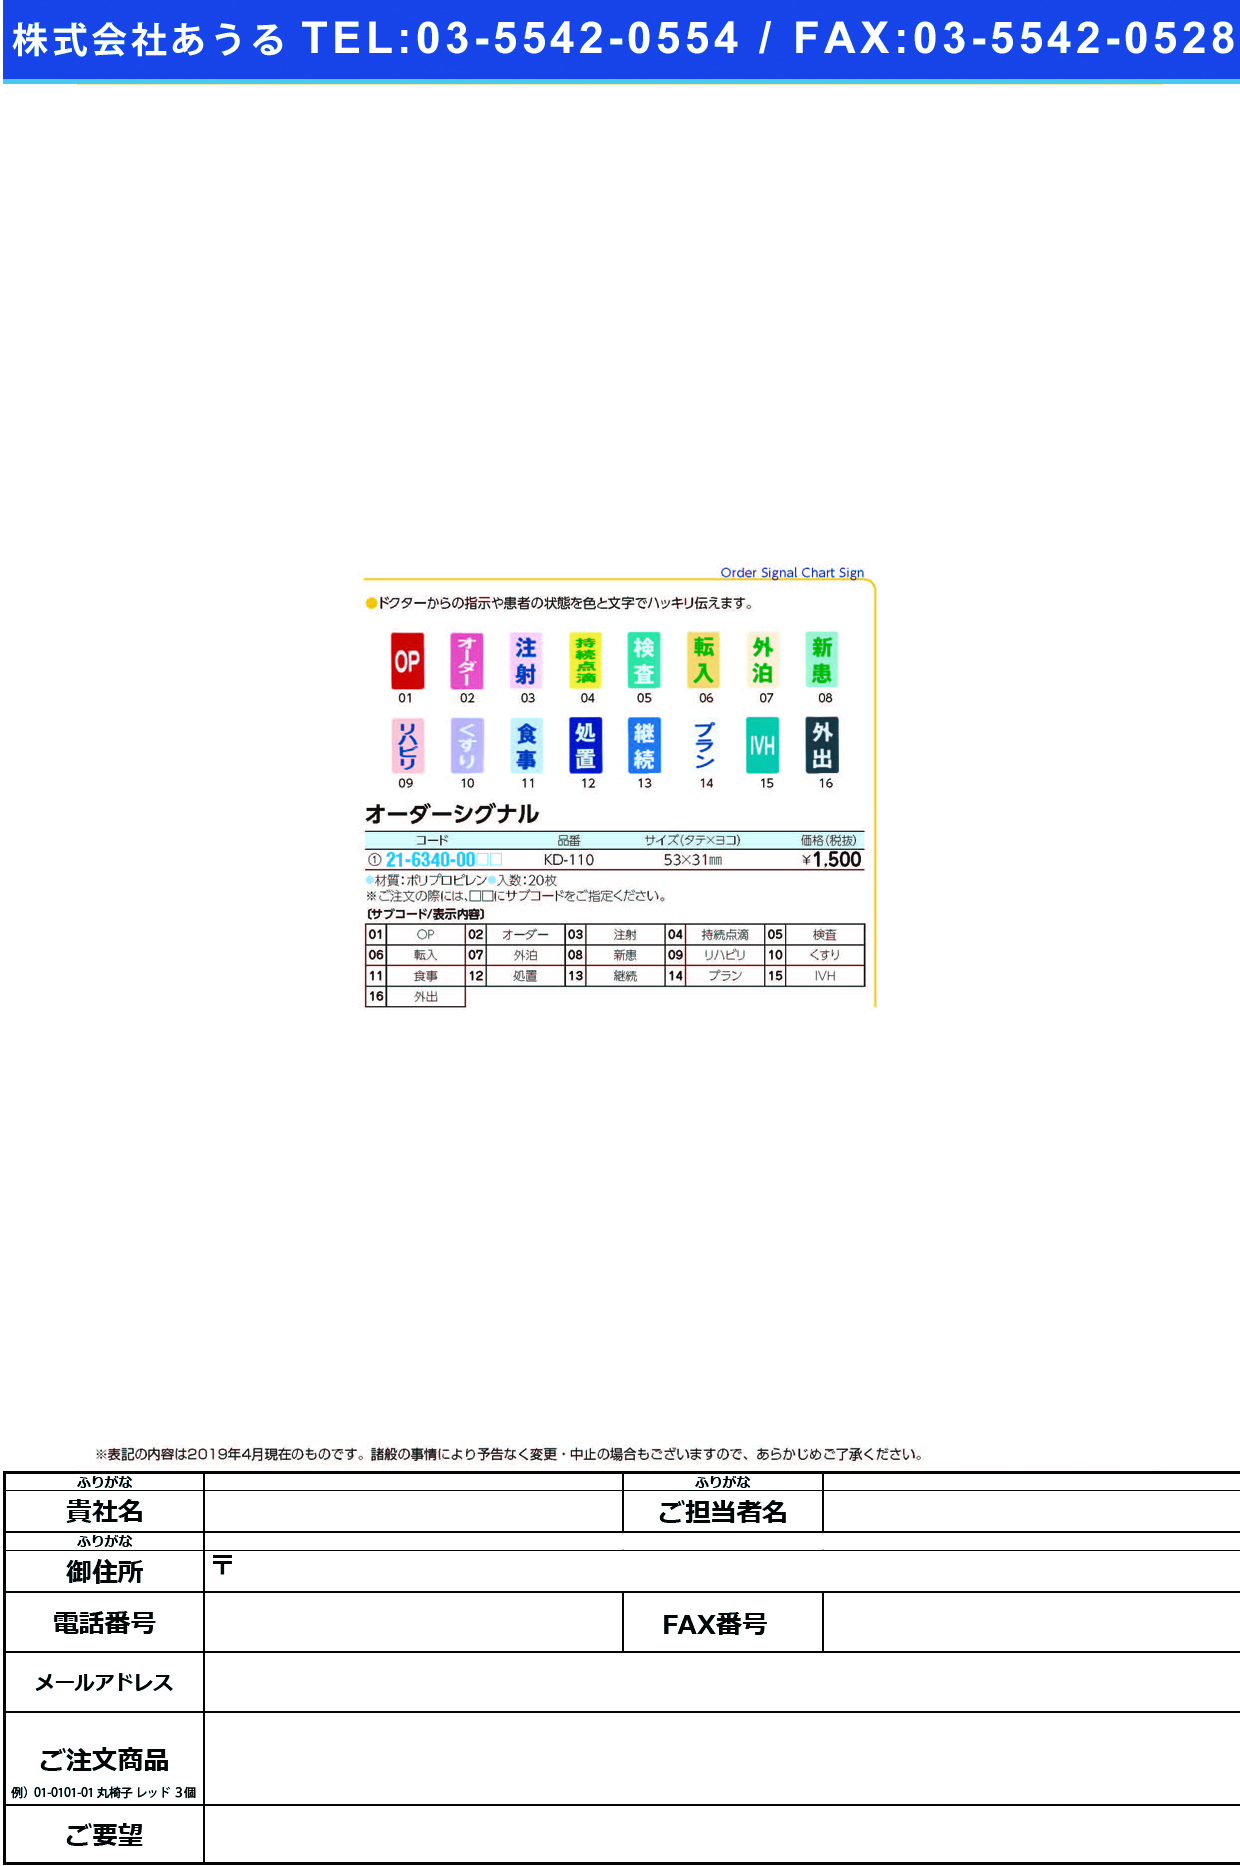 (21-6340-00)オーダーシグナル KD-110(20ﾏｲｲﾘ) ｵｰﾀﾞｰｼｸﾞﾅﾙ 継続(ケルン)【1袋単位】【2019年カタログ商品】